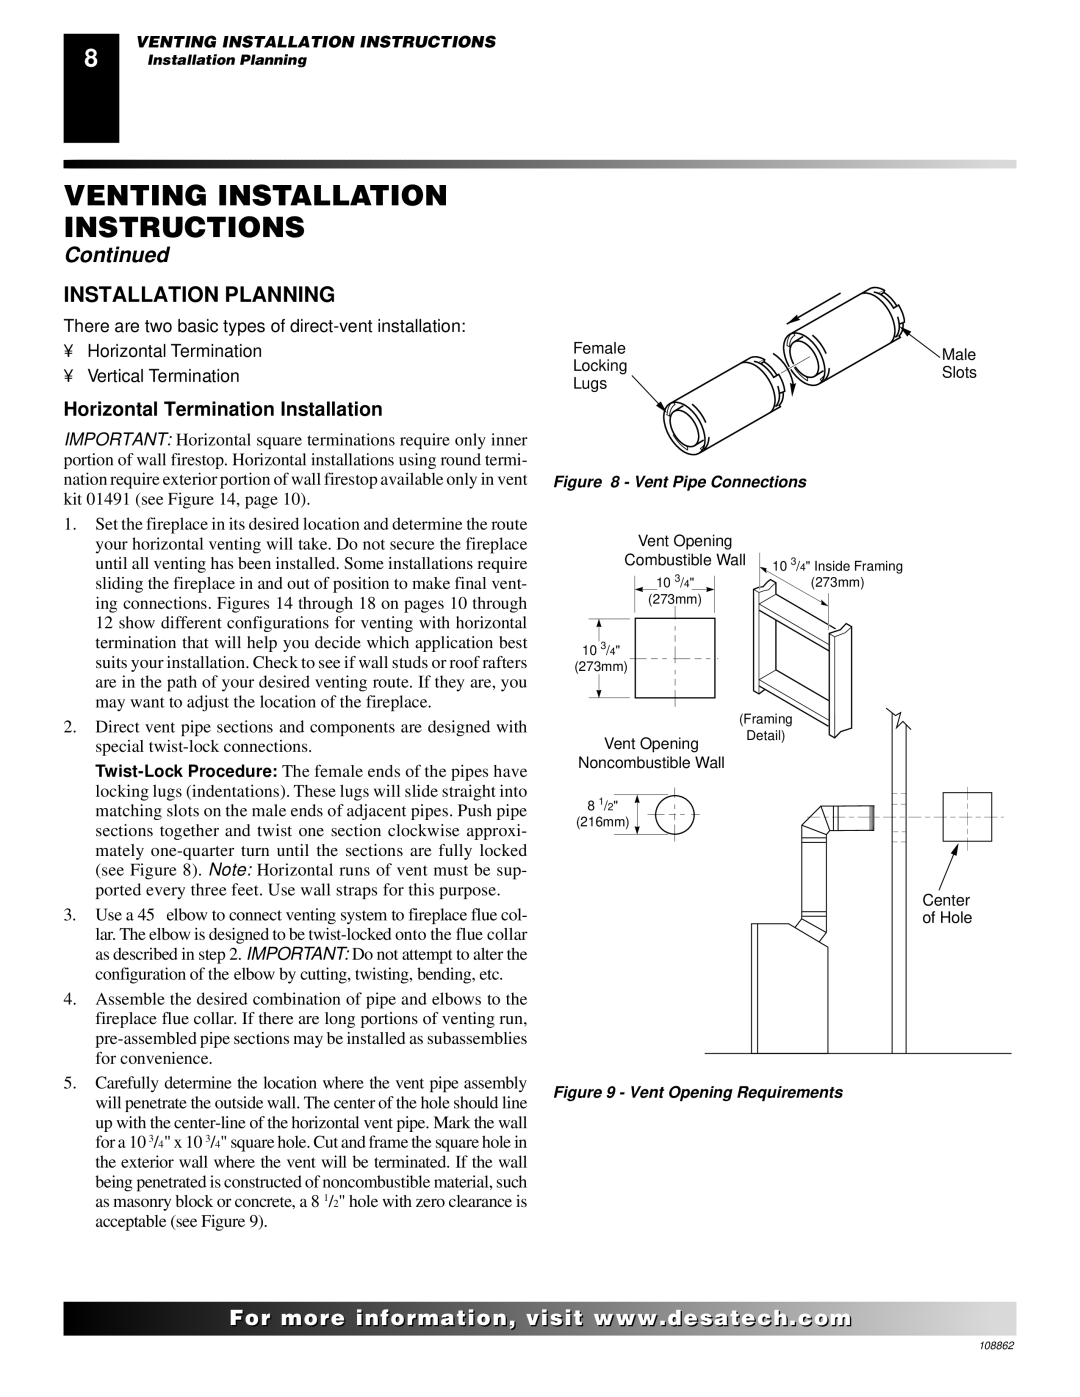 Desa (V)V36EN installation manual Installation Planning, Horizontal Termination Installation 